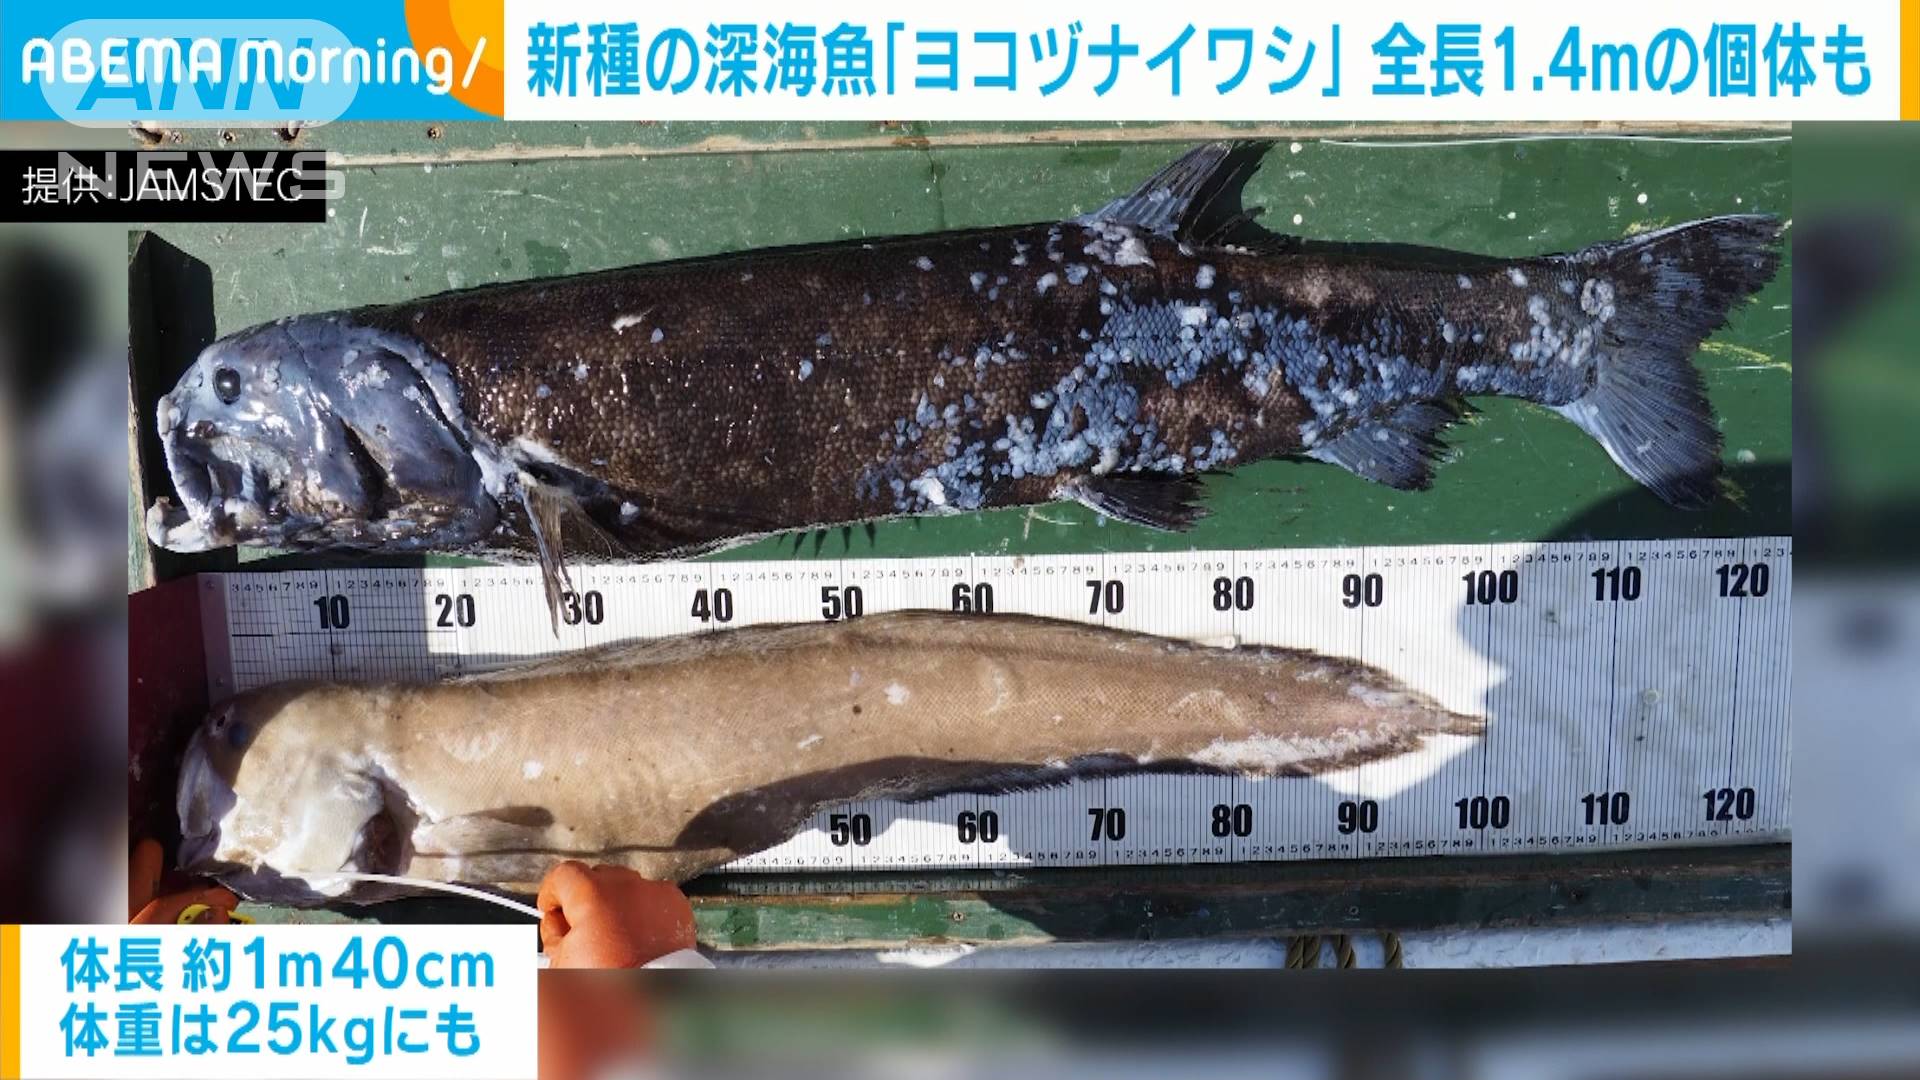 新種の深海魚 ヨコヅナイワシ 発見 泳ぐ姿も撮影 テレ朝news テレビ朝日のニュースサイト